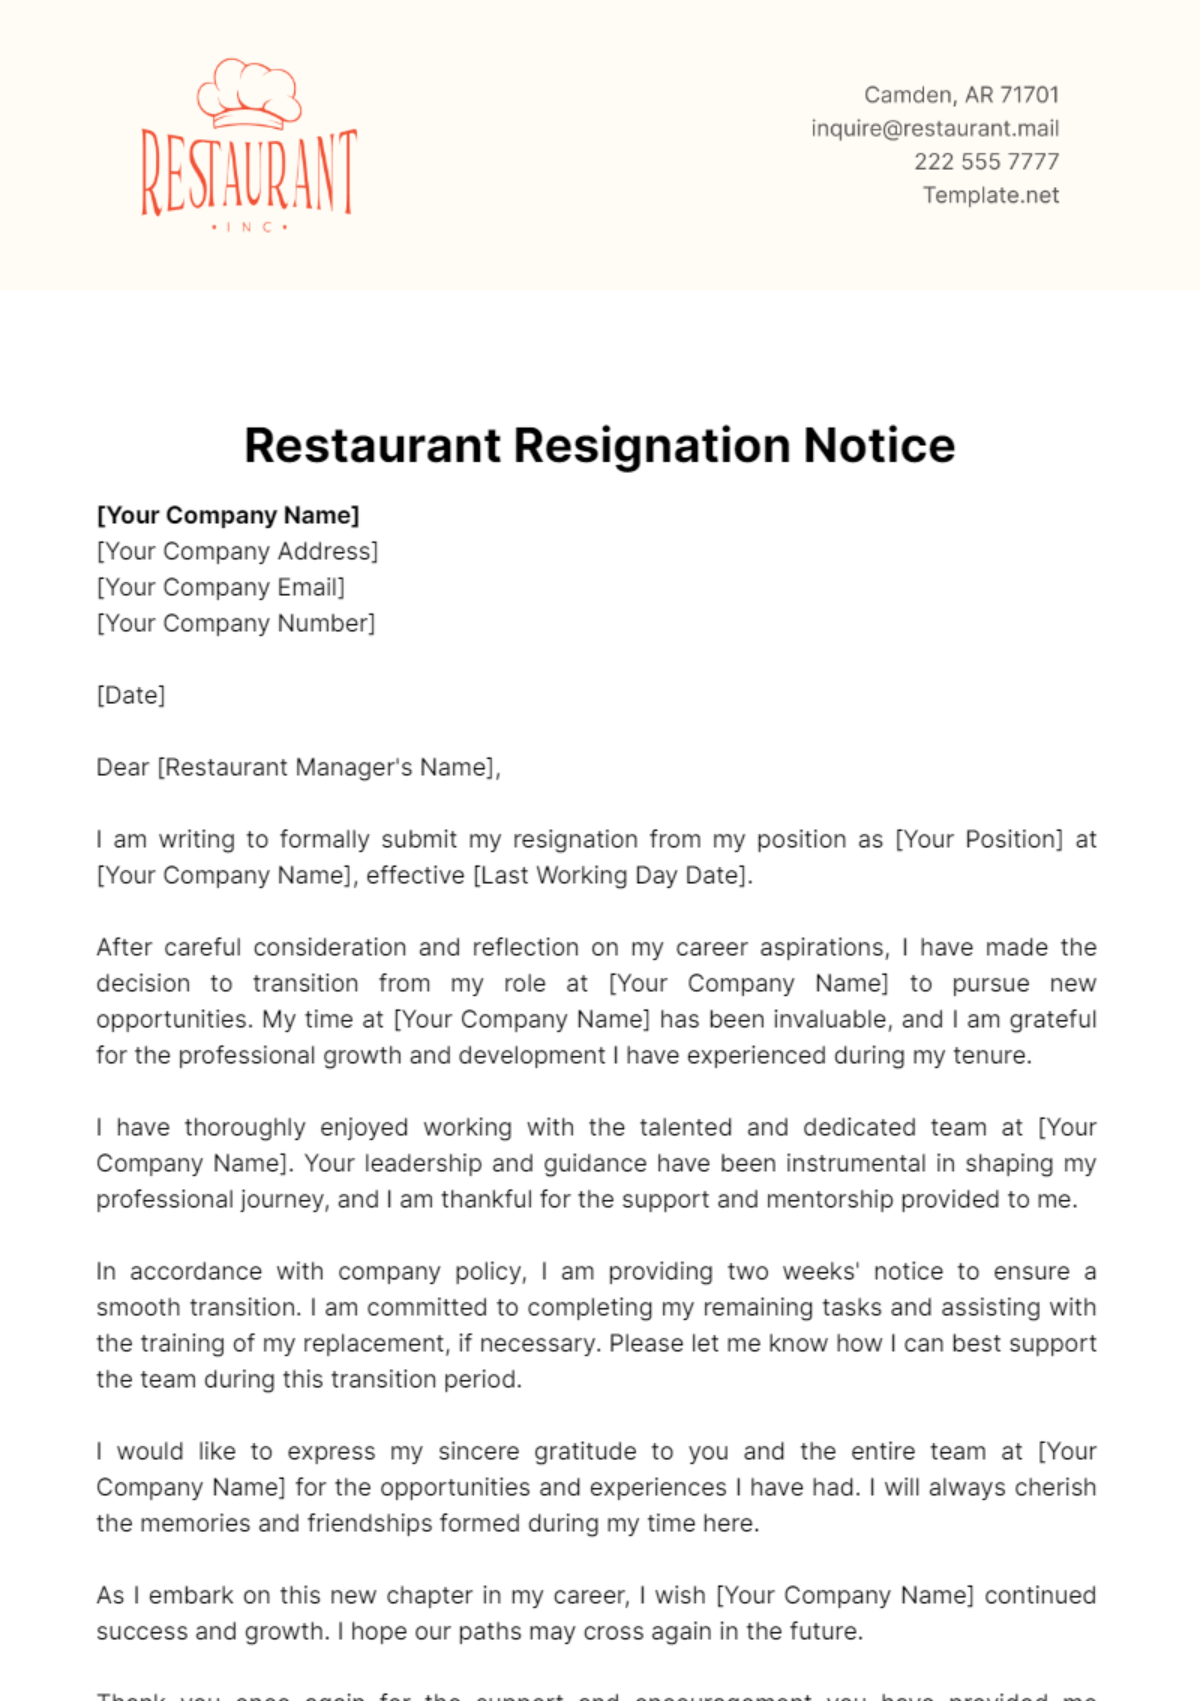 Free Restaurant Resignation Notice Template